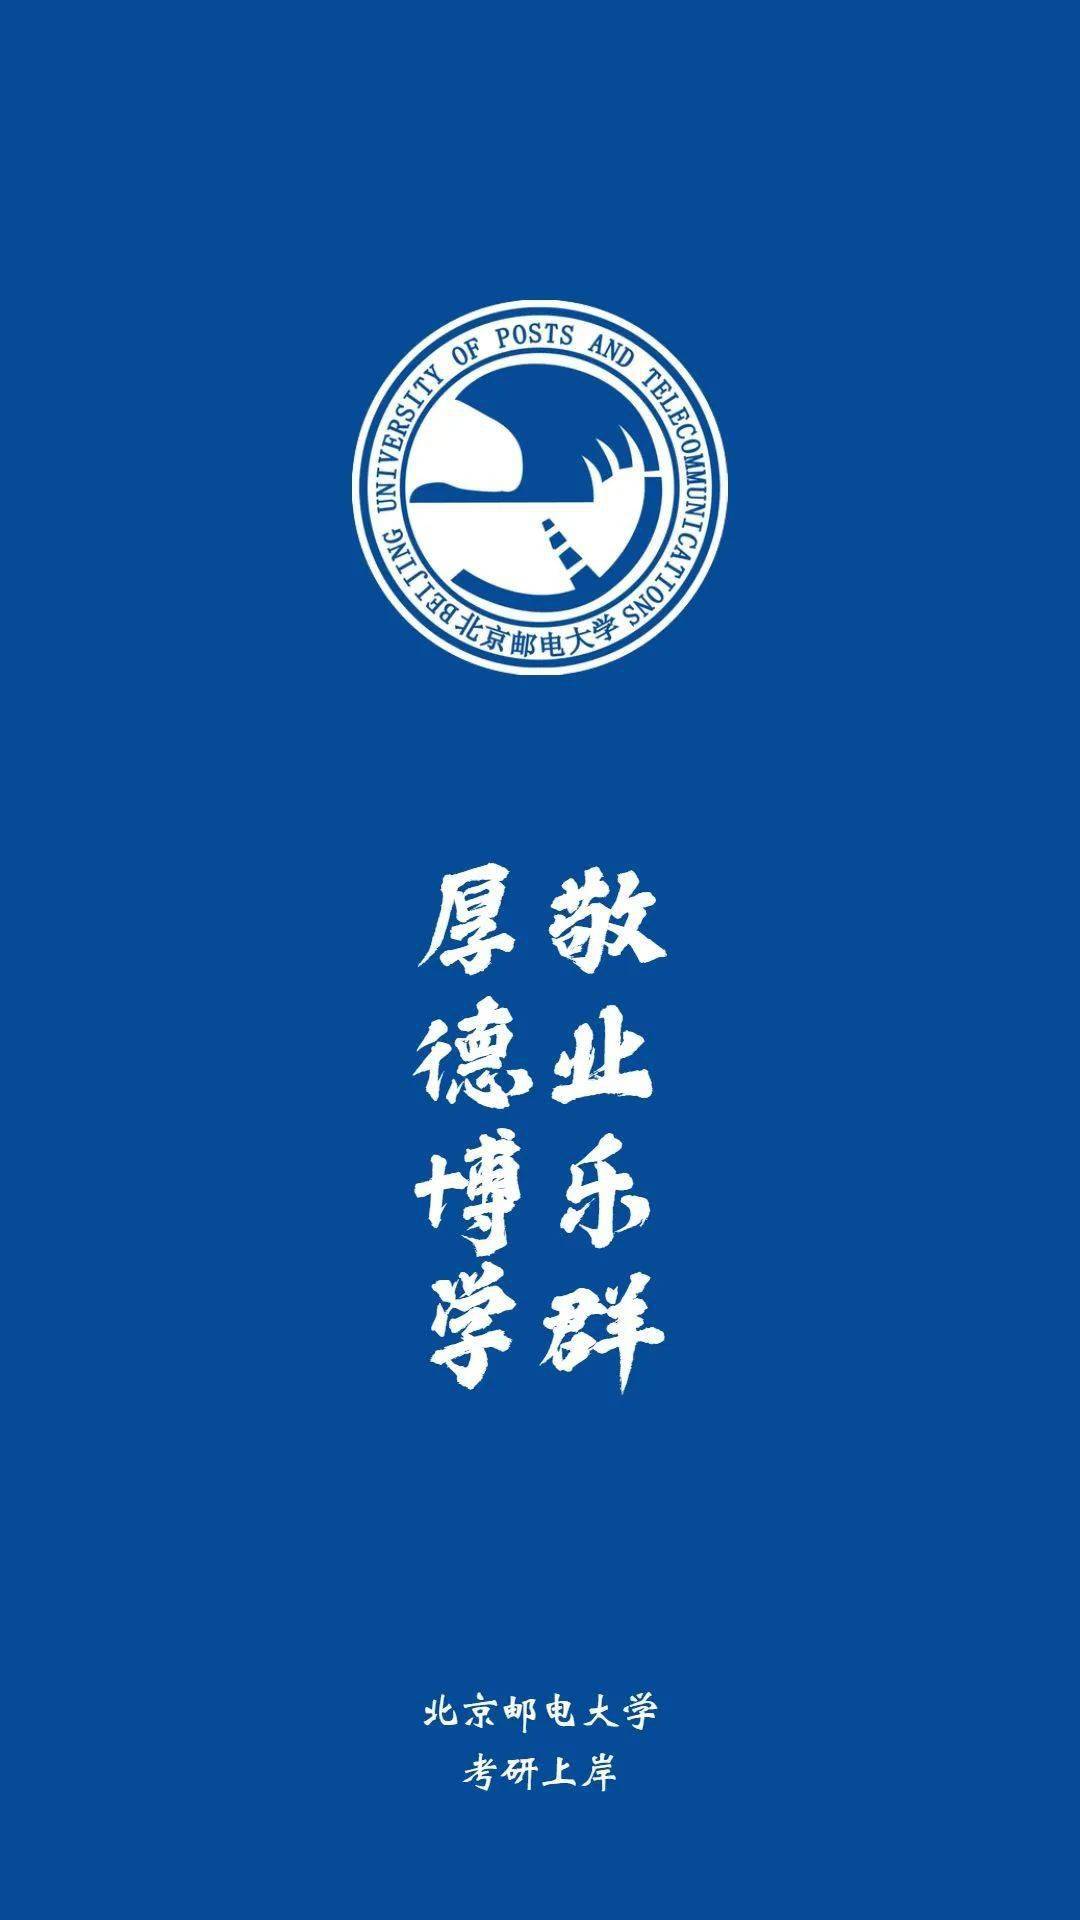 院校官微据网传消息,北京林业大学在第五轮学科评估中,有5个a类学科